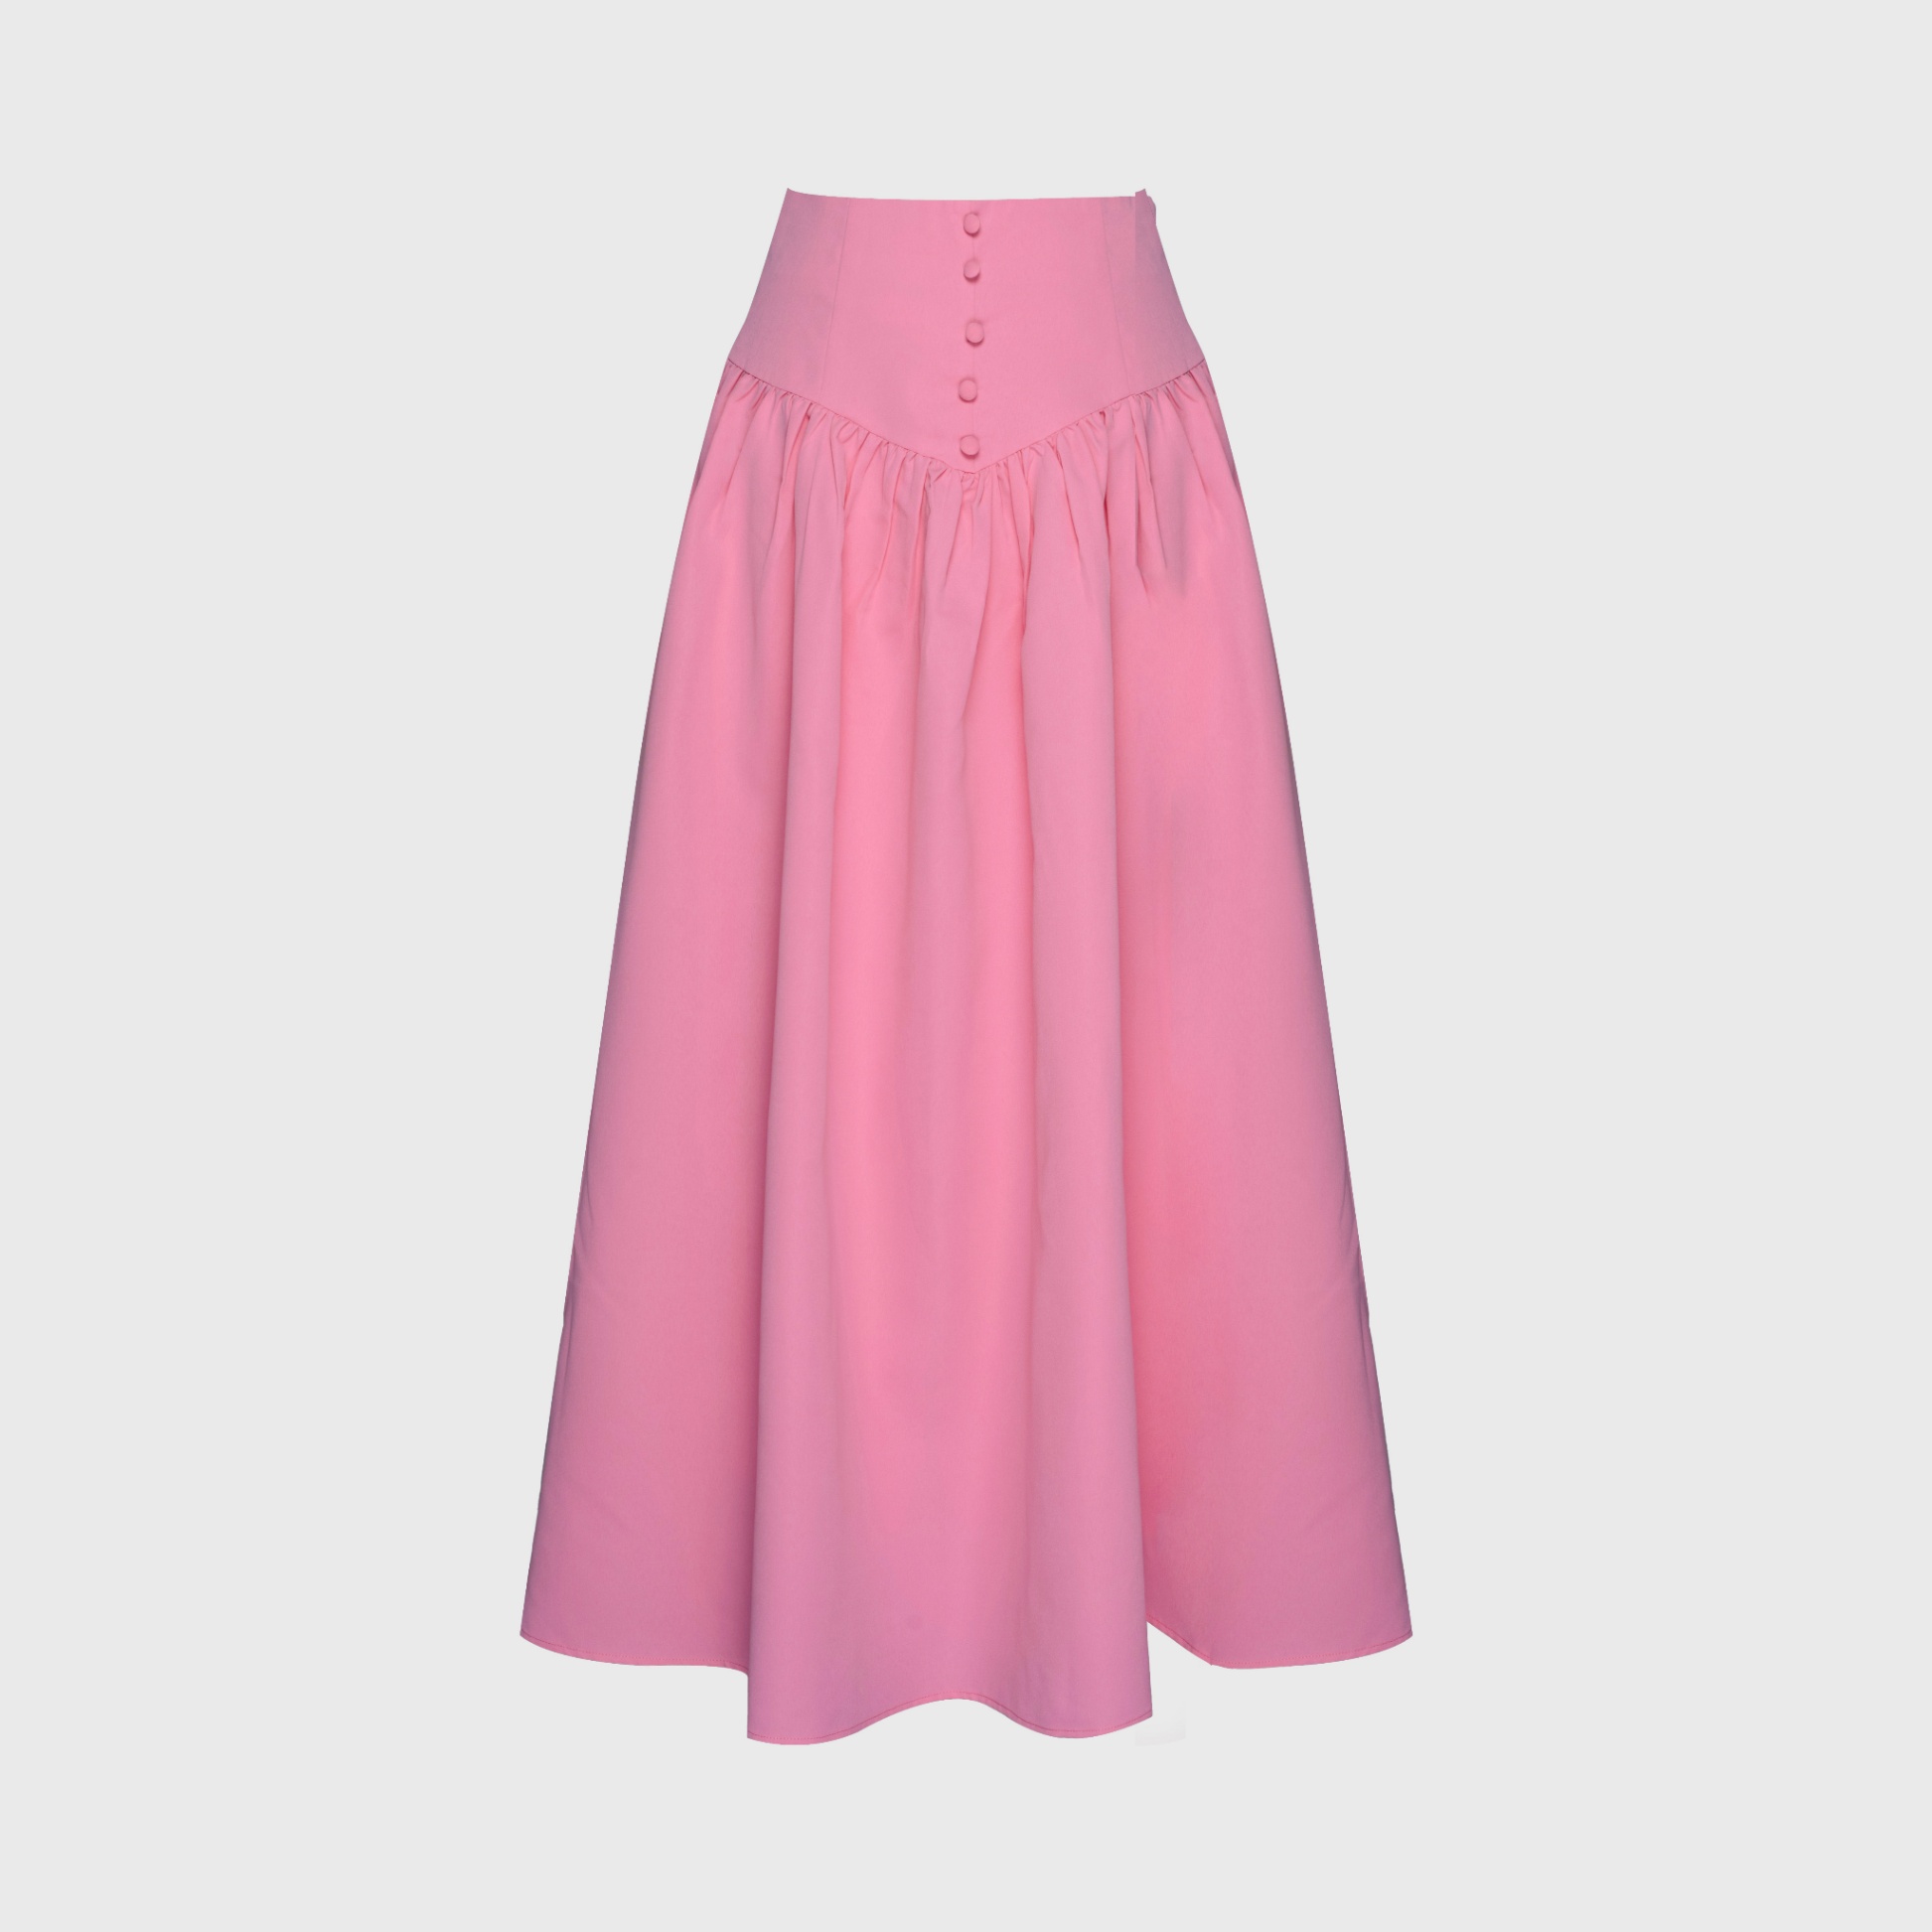 Chân váy ren dài 3 màu hồng- be- đen cực xinh cho bé gái-v498 rẻ đẹp cho bé